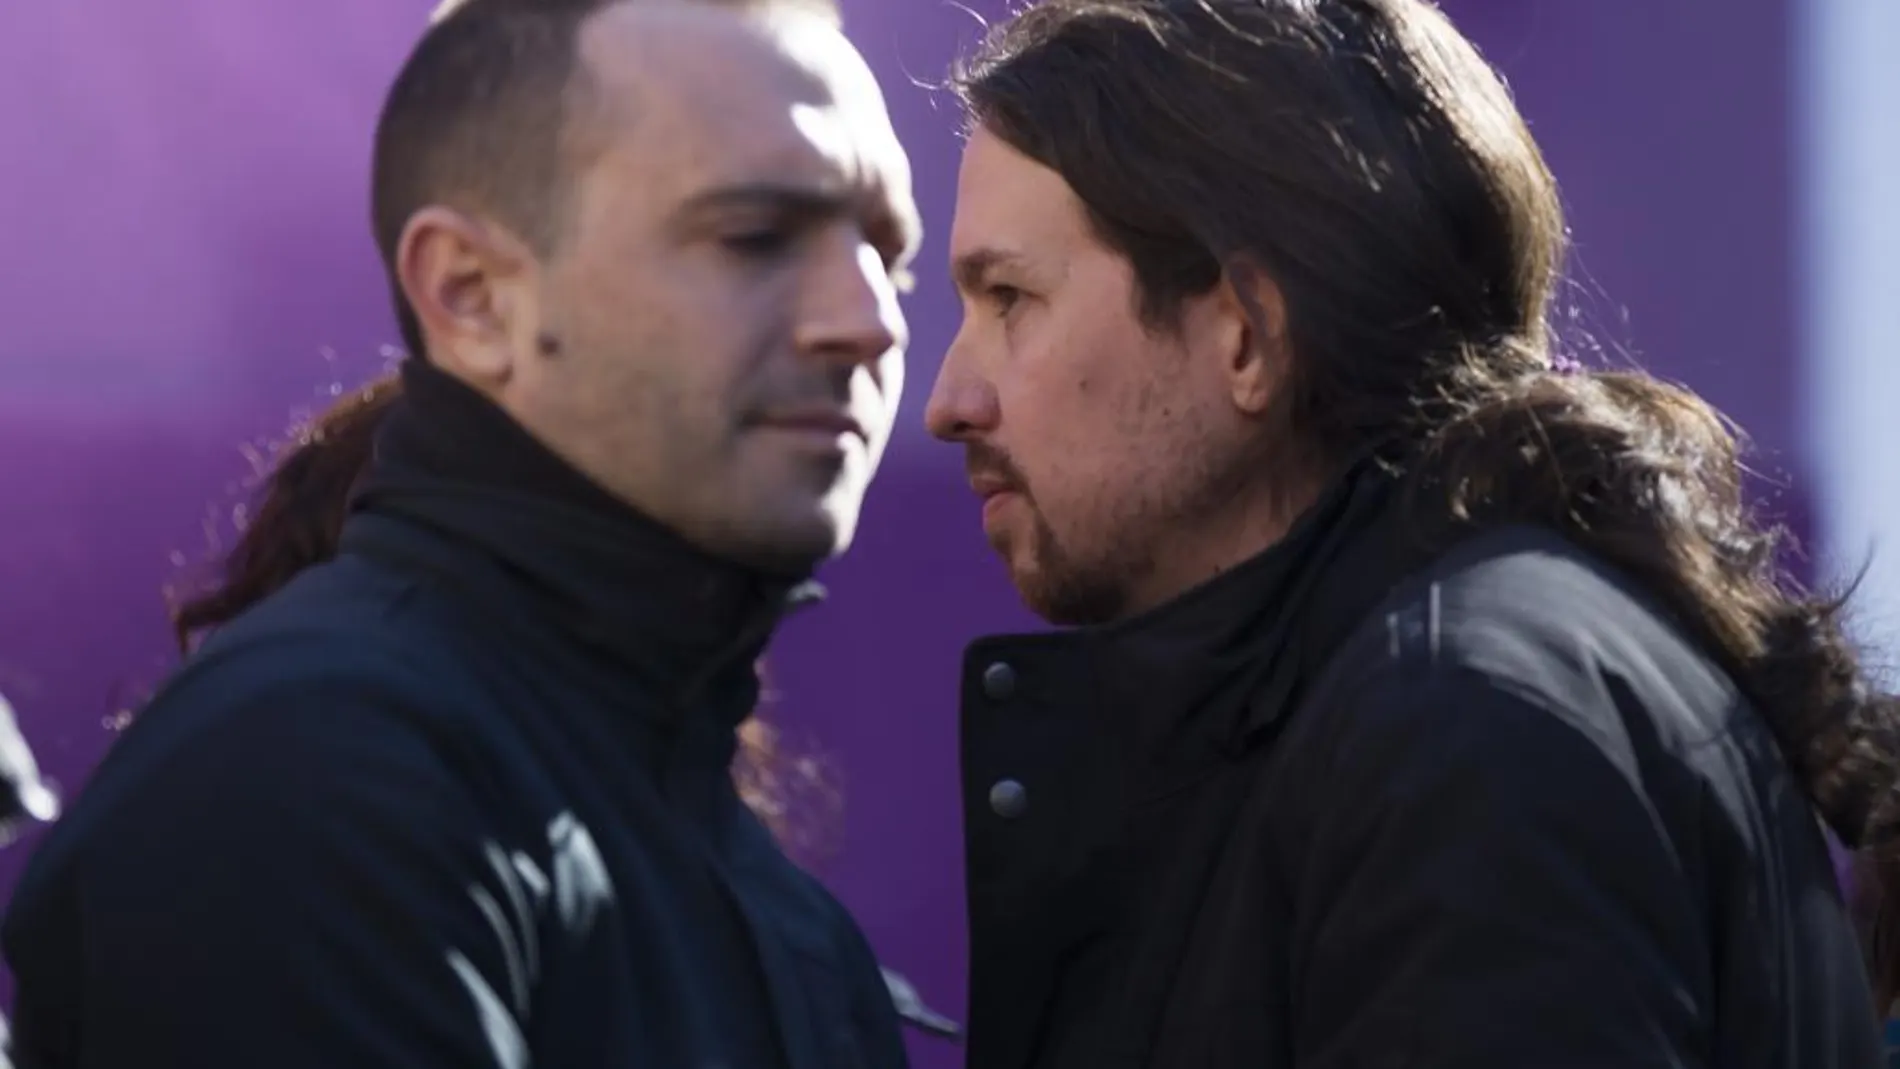 El líder de Podemos Pablo Iglesias acude a un acto de Luis Alegre en Madrid en 2015.